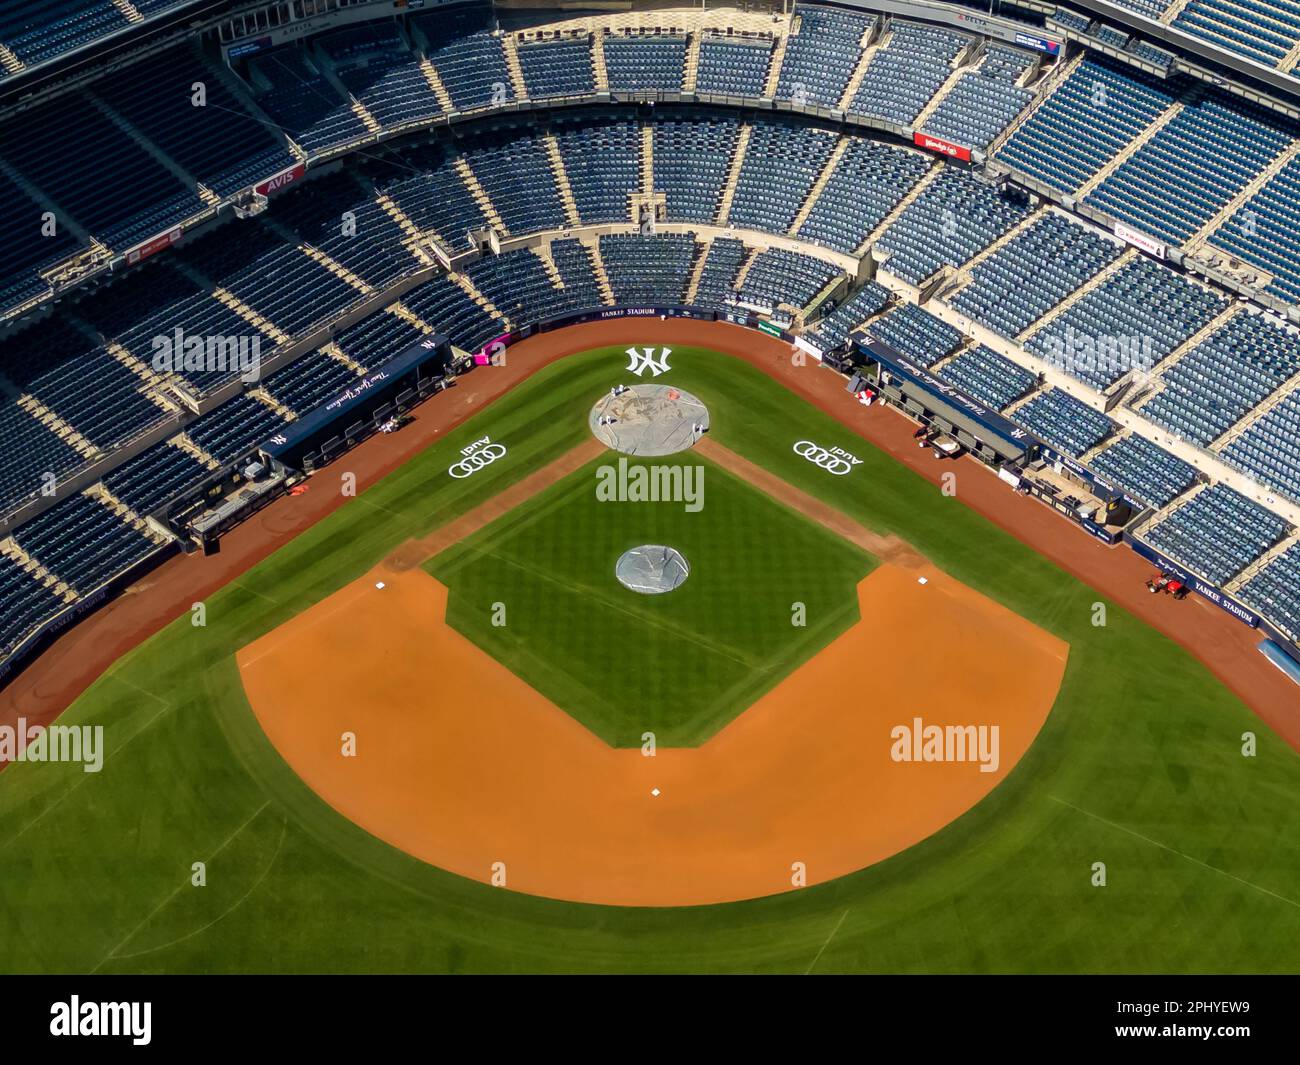 Yankee Stadium from above Stock Photo - Alamy